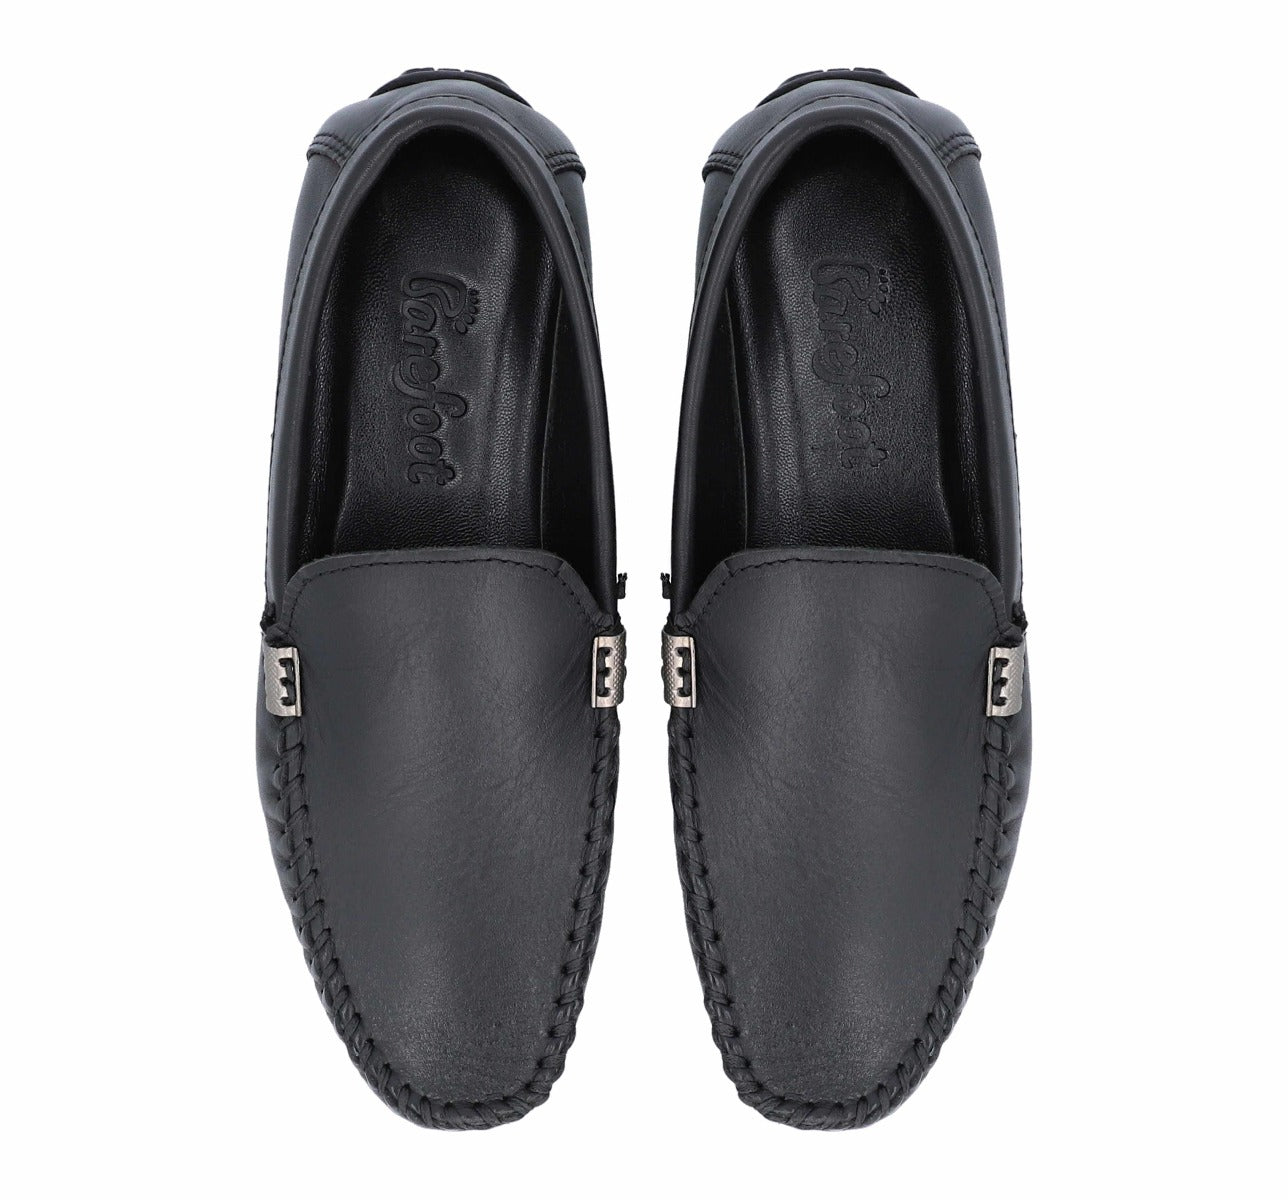 Barefoot Black Loafers Slip On For Men 6060